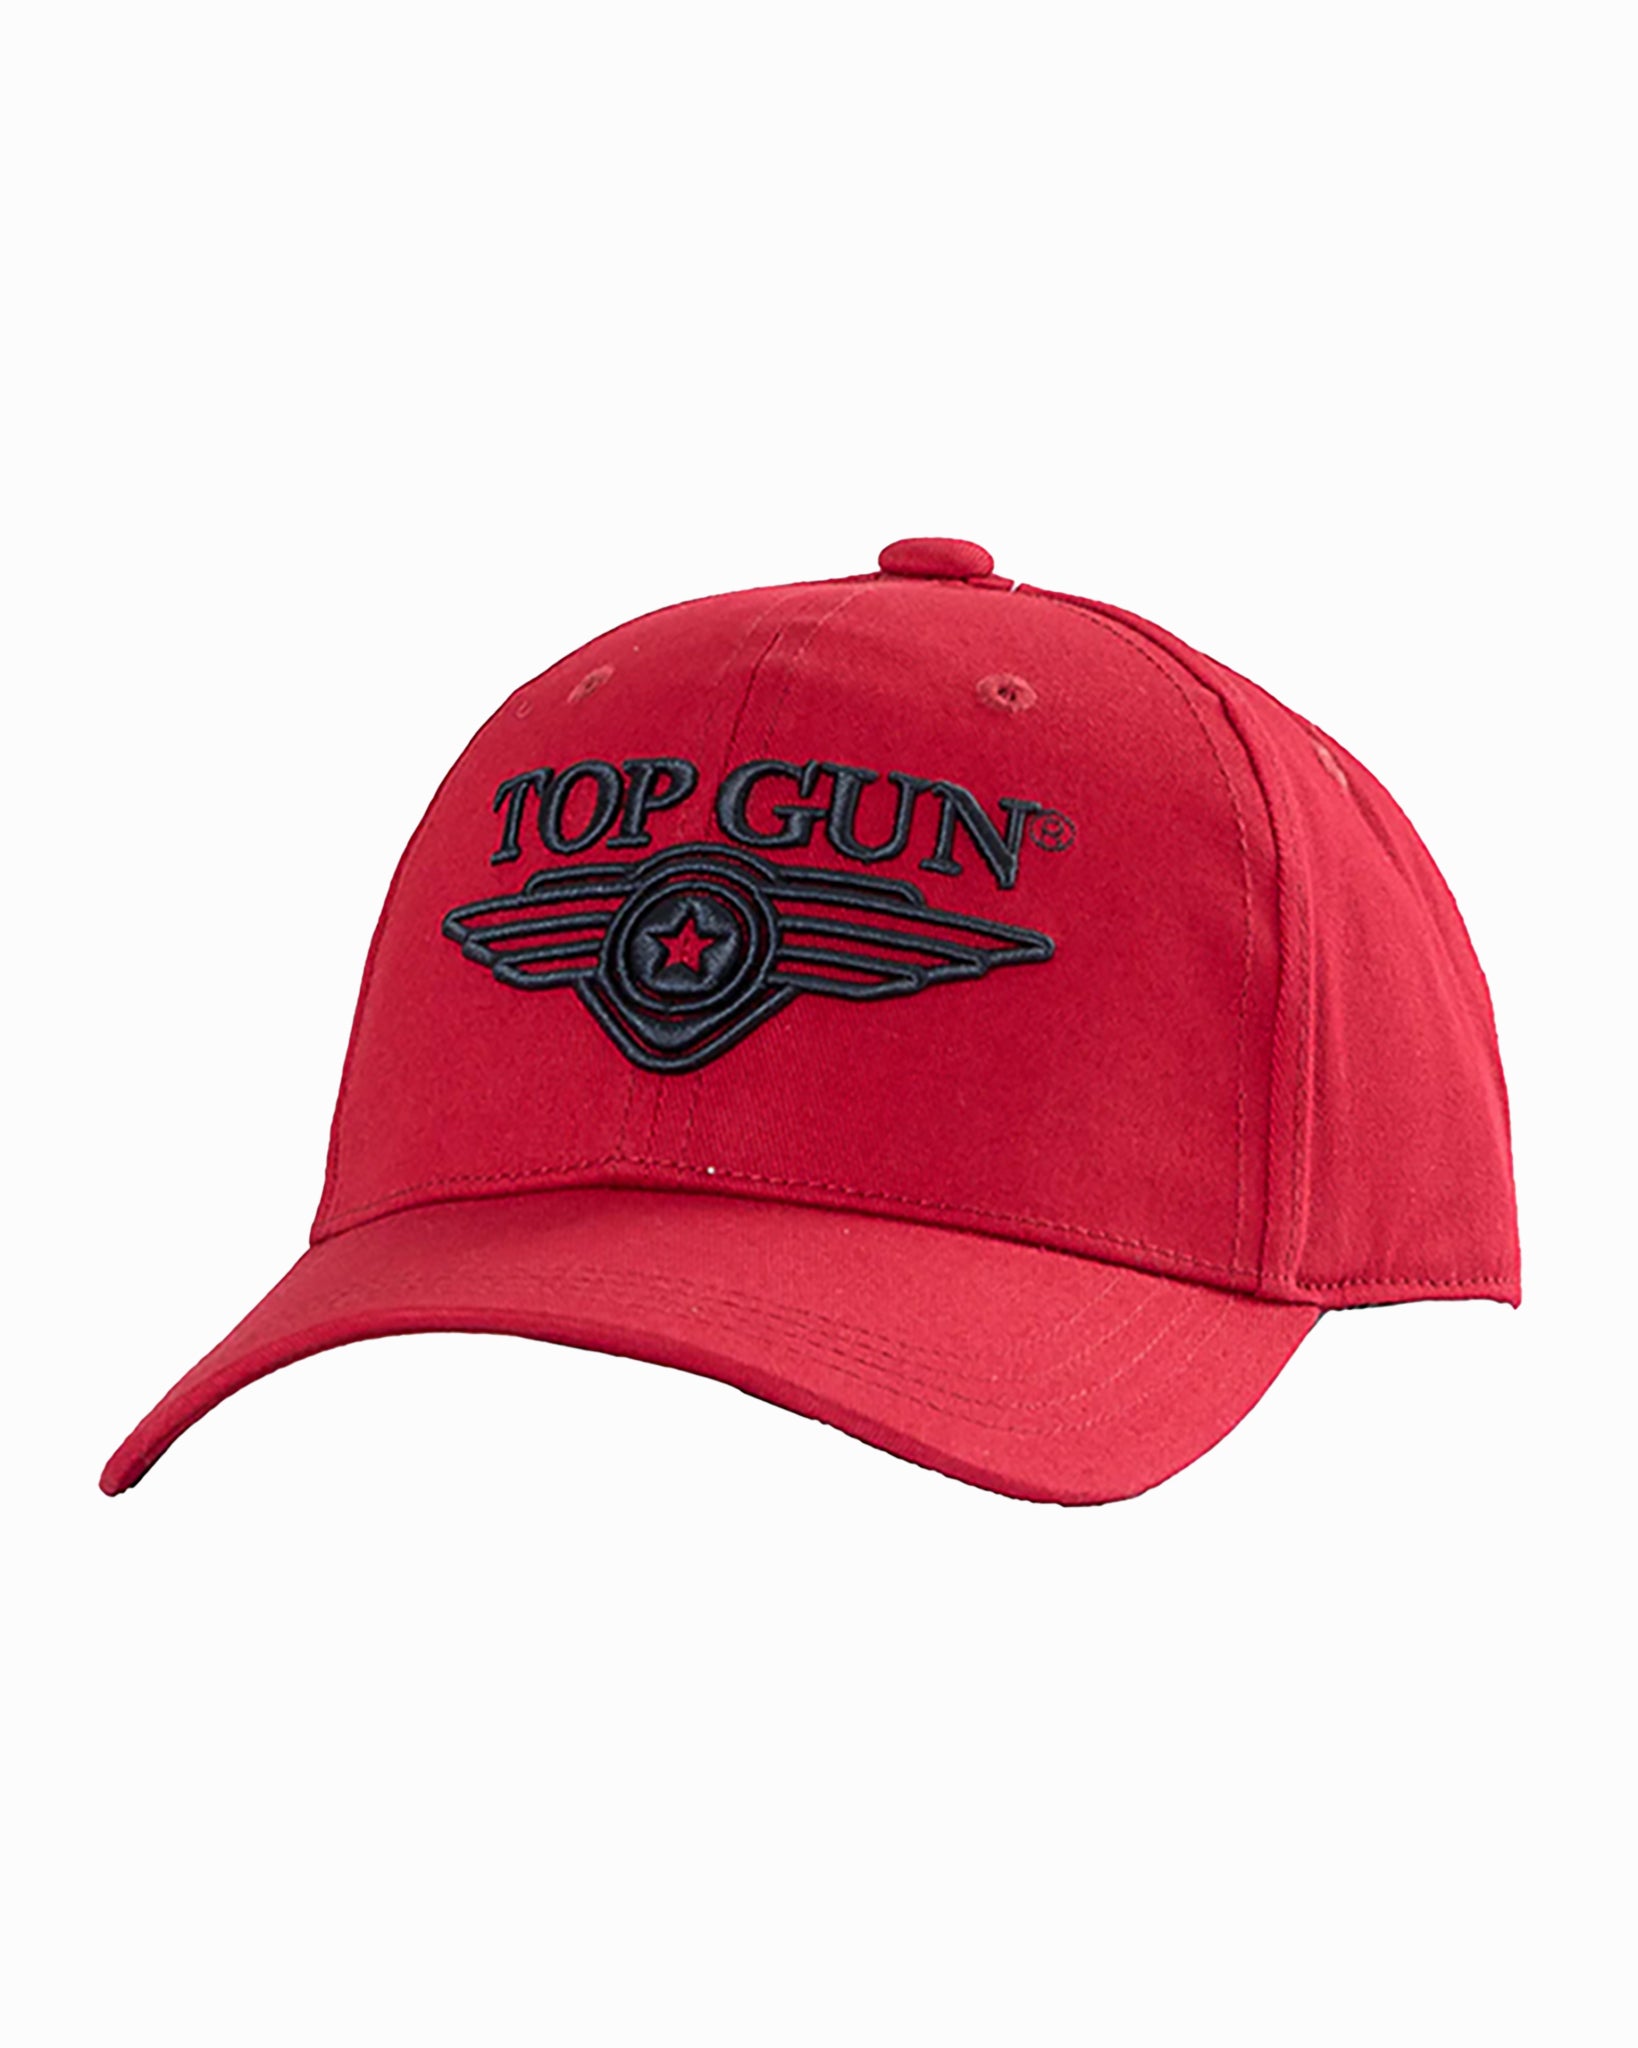 GUN® TOP 3D Store Gun – CAP Top WINGS LOGO